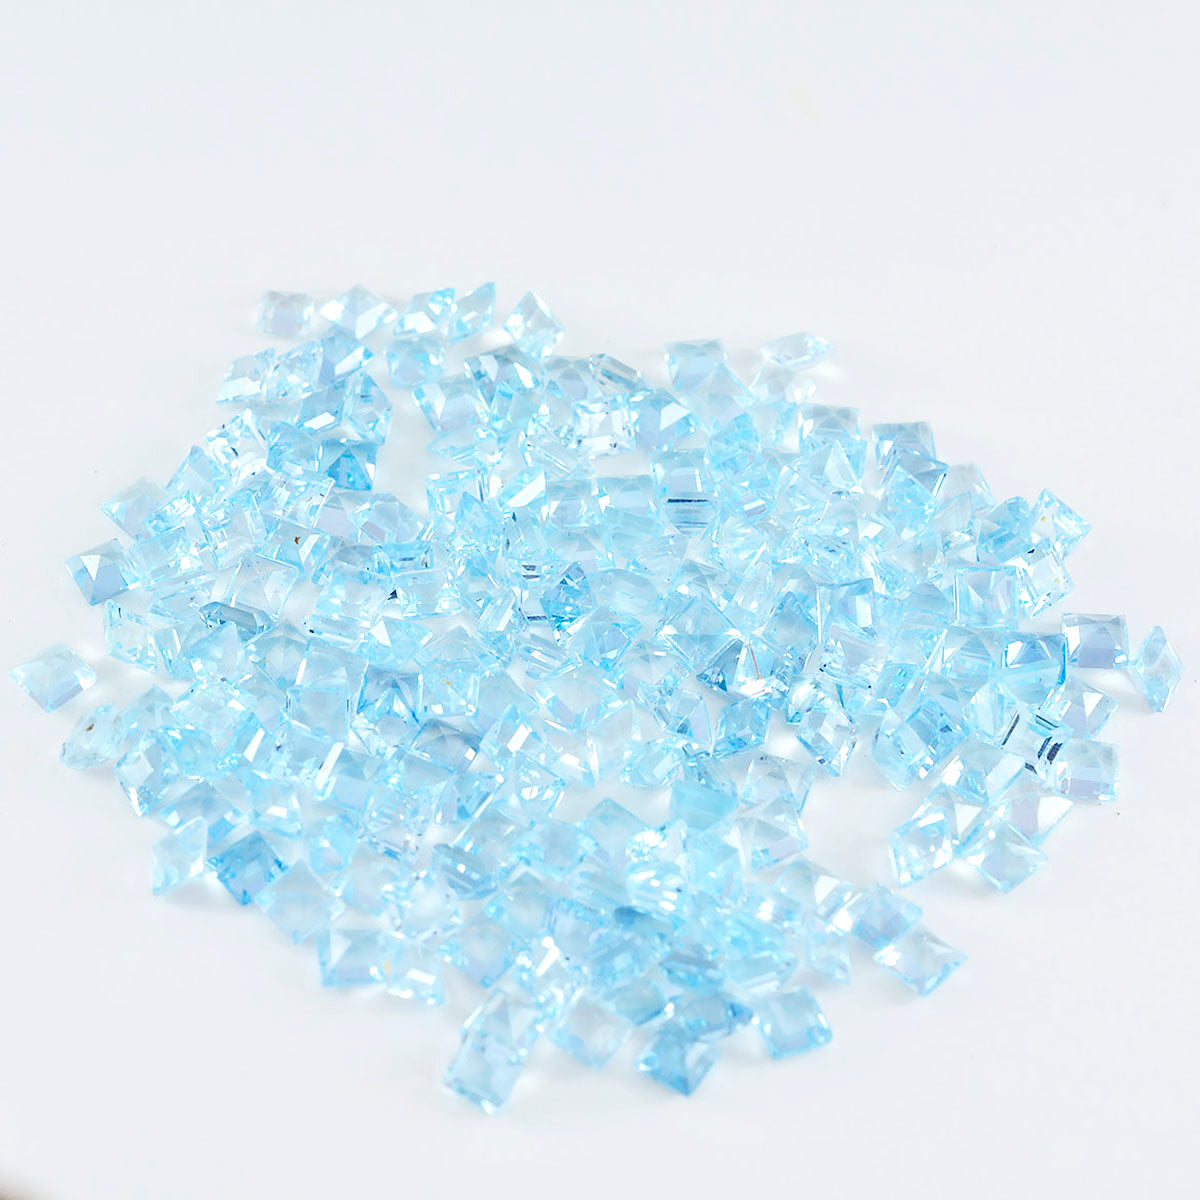 riyogems 1 шт. настоящий синий топаз ограненный 3x3 мм квадратной формы + 1 качественный драгоценный камень